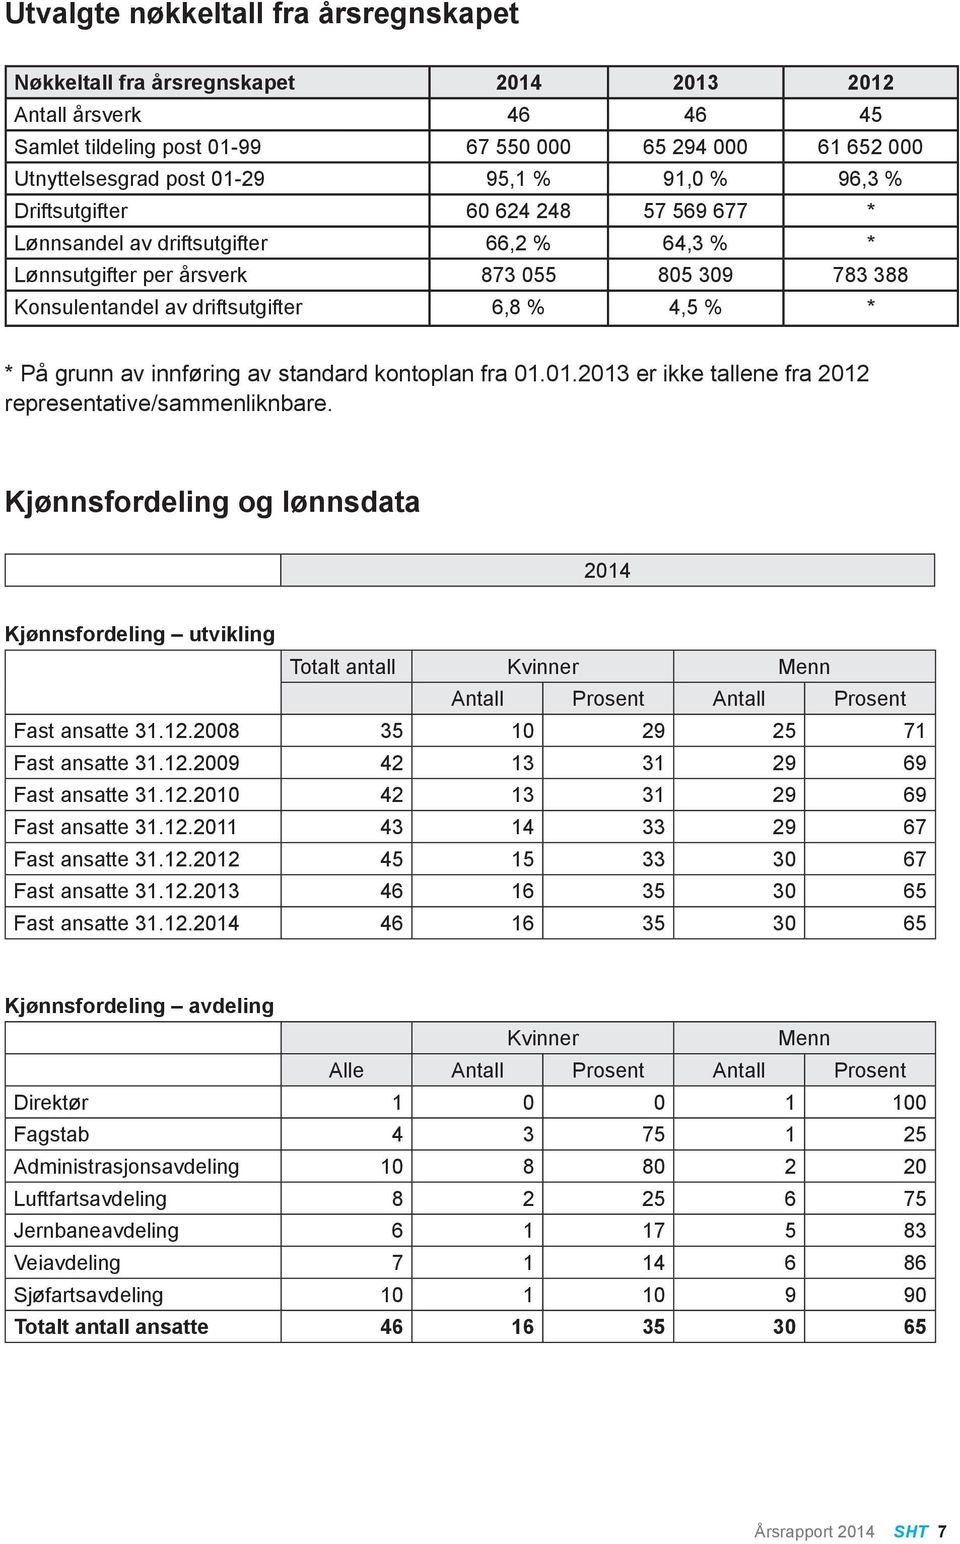 På grunn av innføring av standard kontoplan fra 01.01.2013 er ikke tallene fra 2012 representative/sammenliknbare.